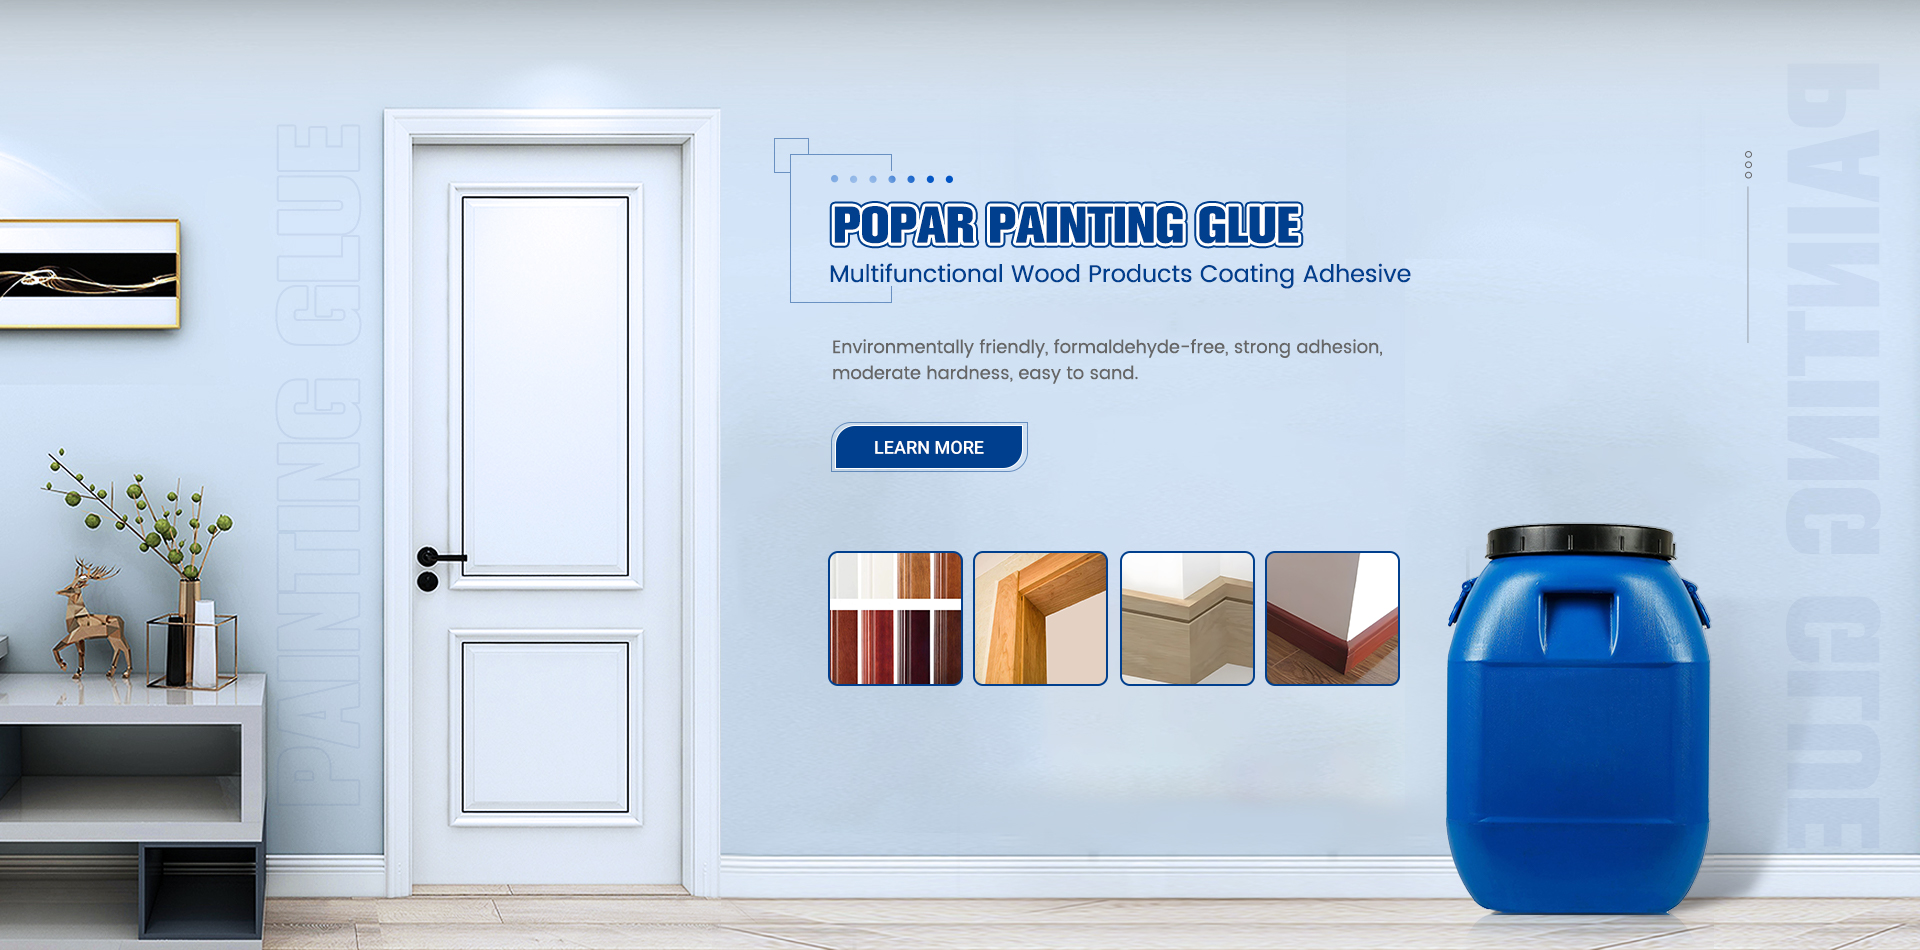 Popar Painting Glue